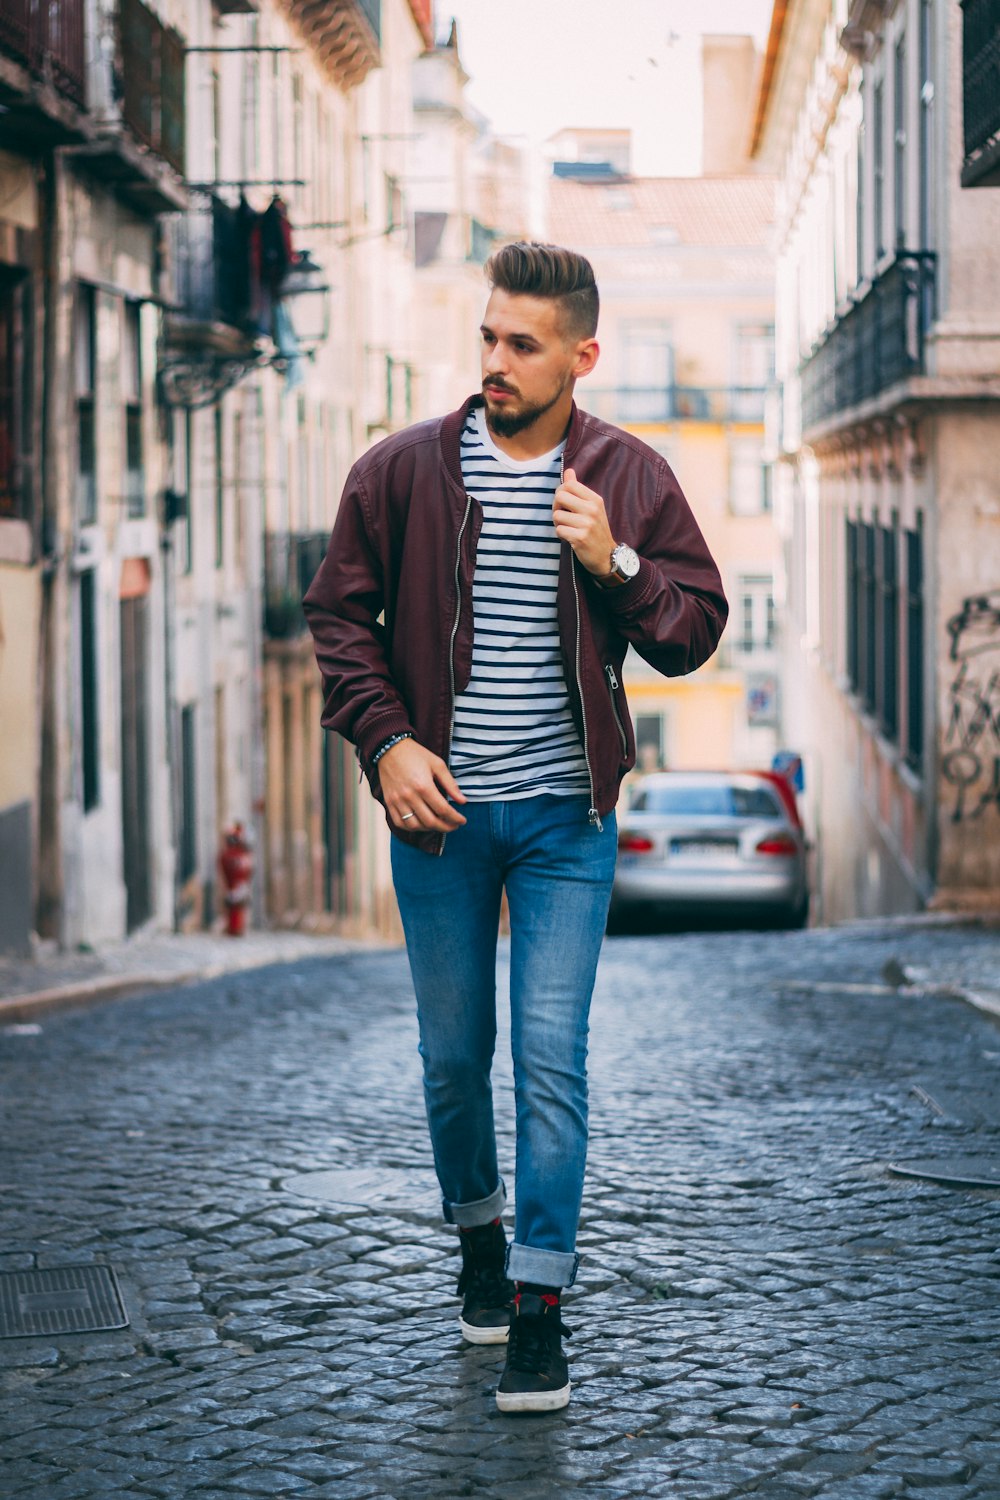 man in maroon zip-up jacket walking near building